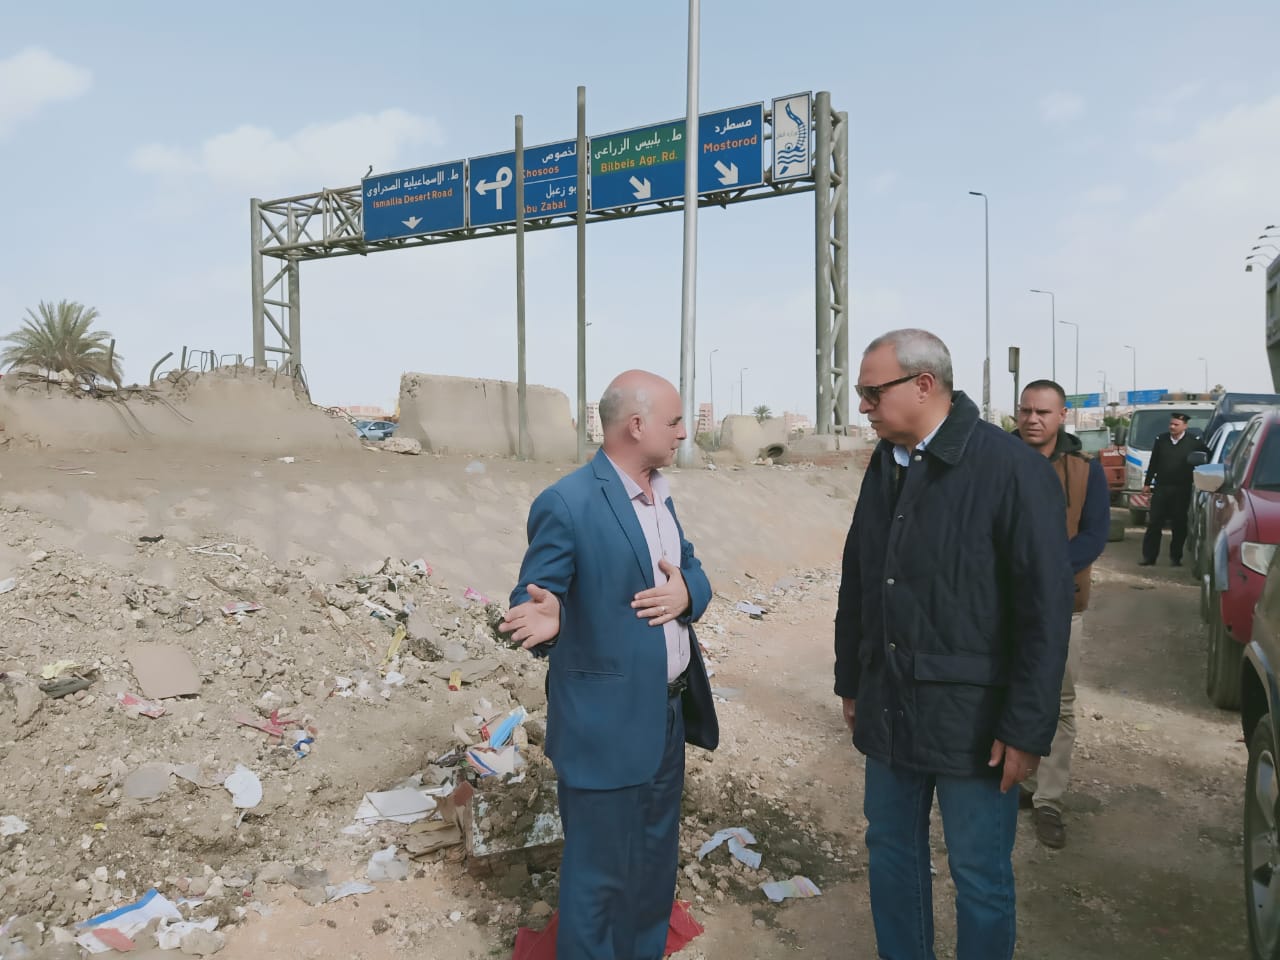   صور| محافظ القليوبيه يتابع اعمال رفع تراكمات القمامة بمدينة بنها واعمال تطوير بحى شرق شبرا الخيمة 